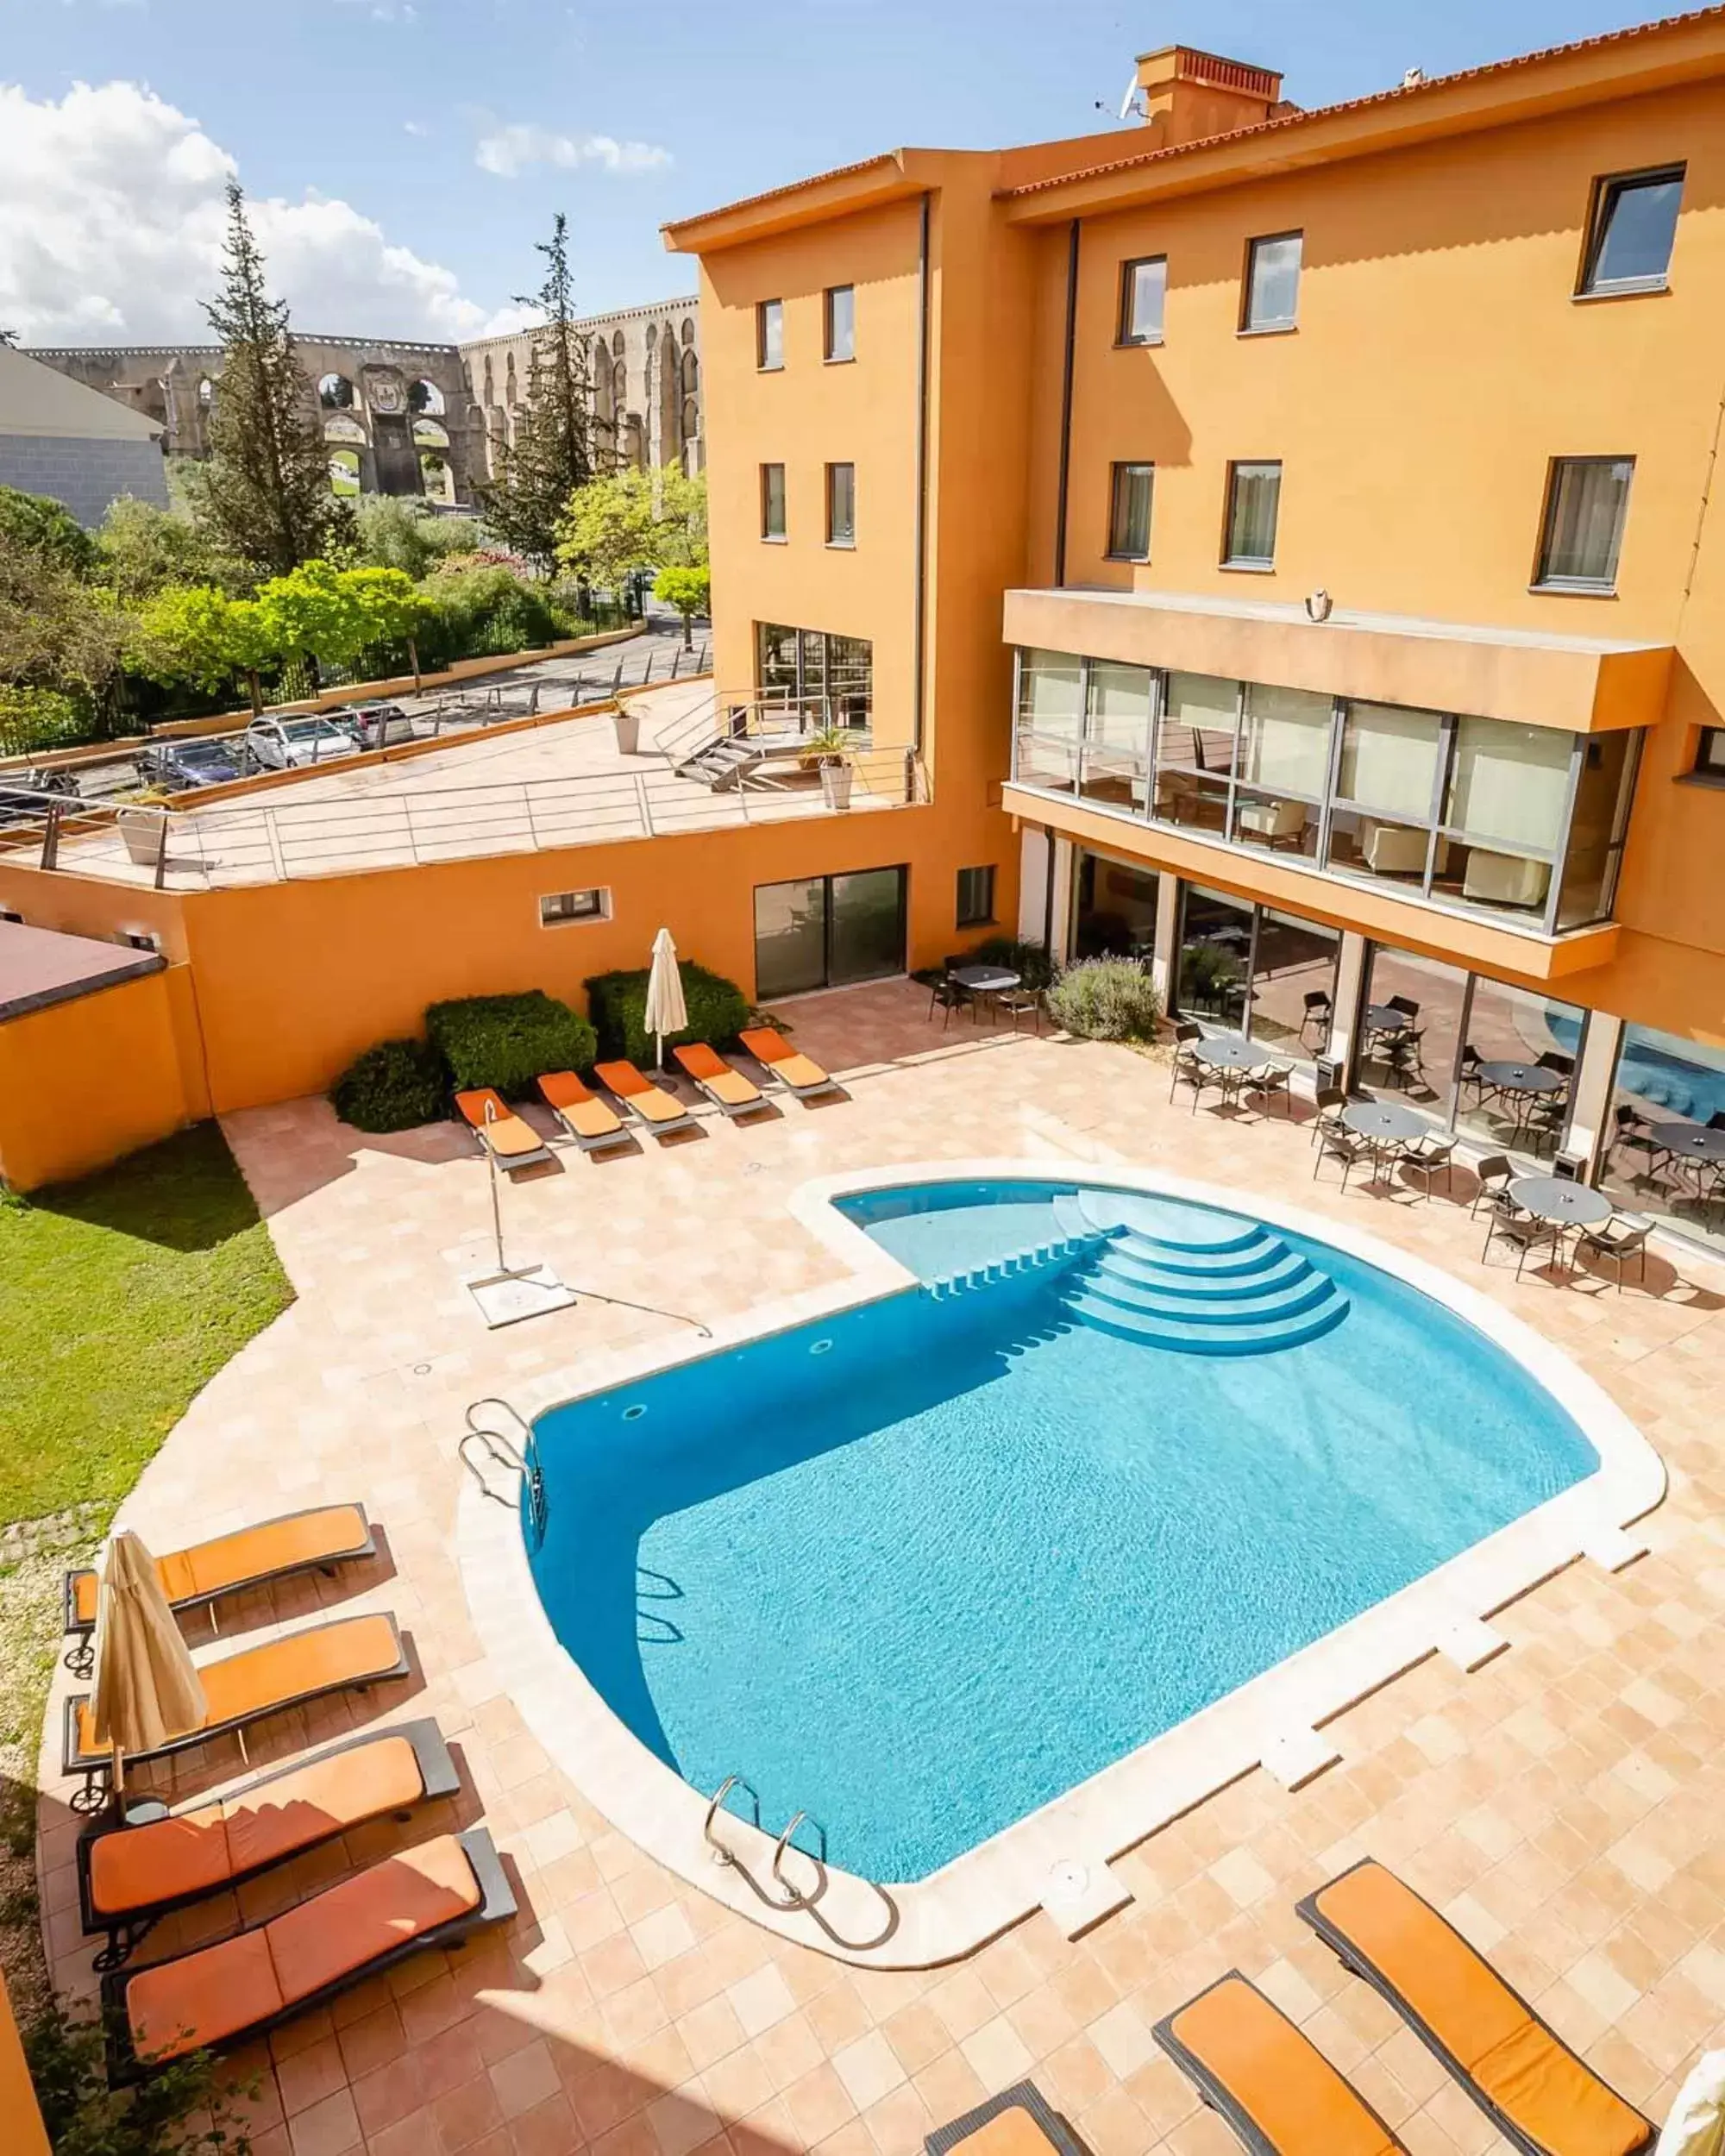 Pool View in Hotel D. Luis - Elvas